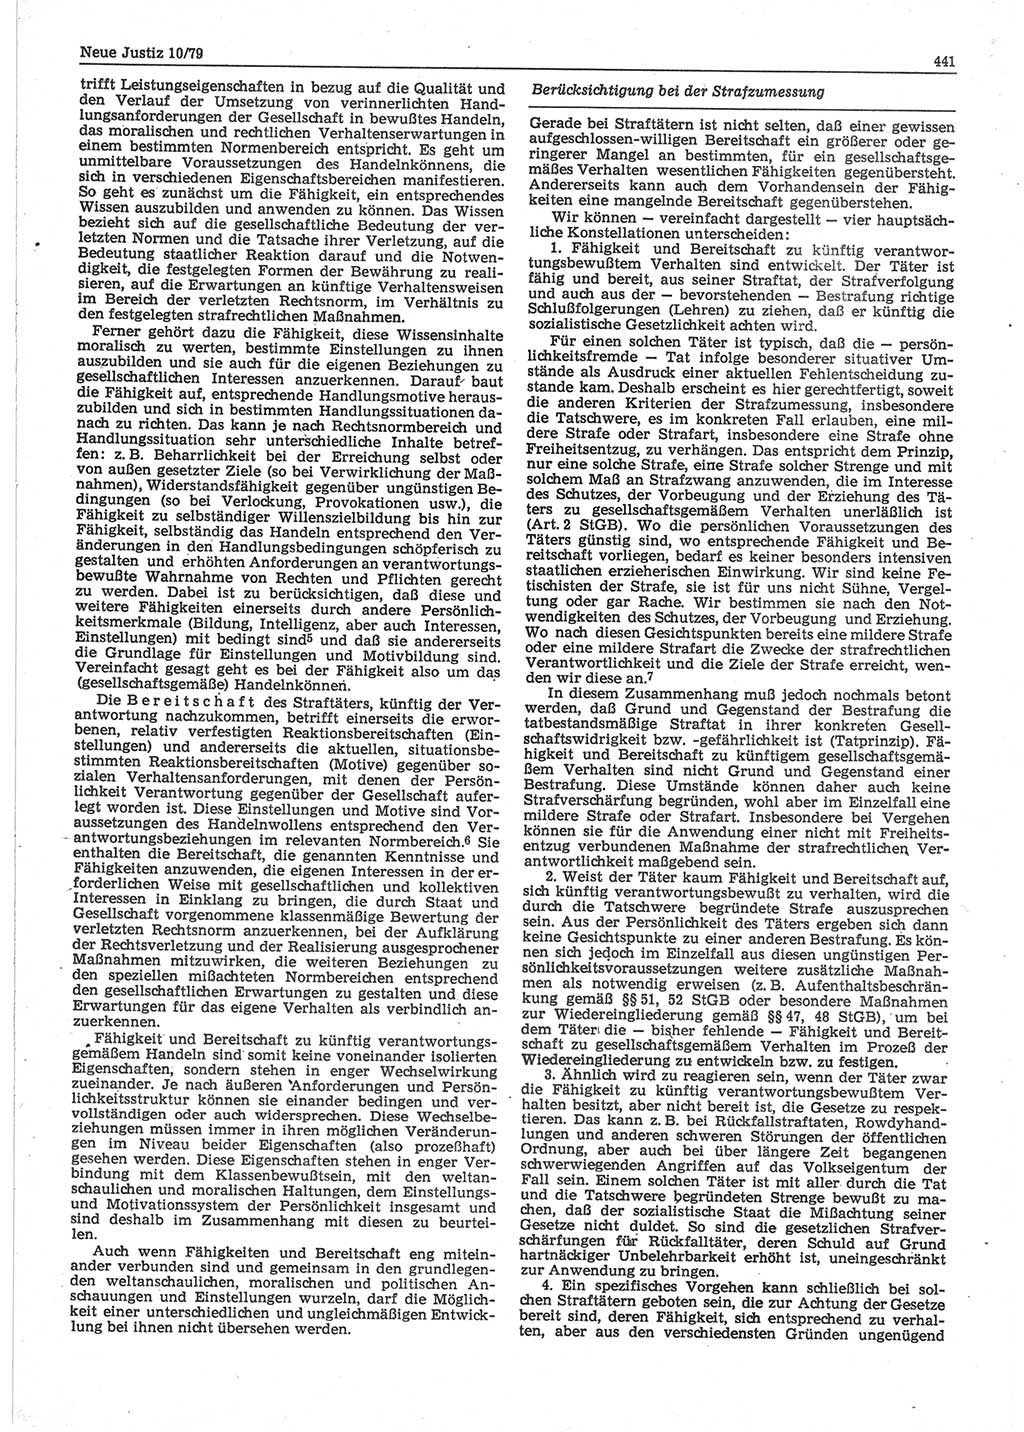 Neue Justiz (NJ), Zeitschrift für sozialistisches Recht und Gesetzlichkeit [Deutsche Demokratische Republik (DDR)], 33. Jahrgang 1979, Seite 441 (NJ DDR 1979, S. 441)